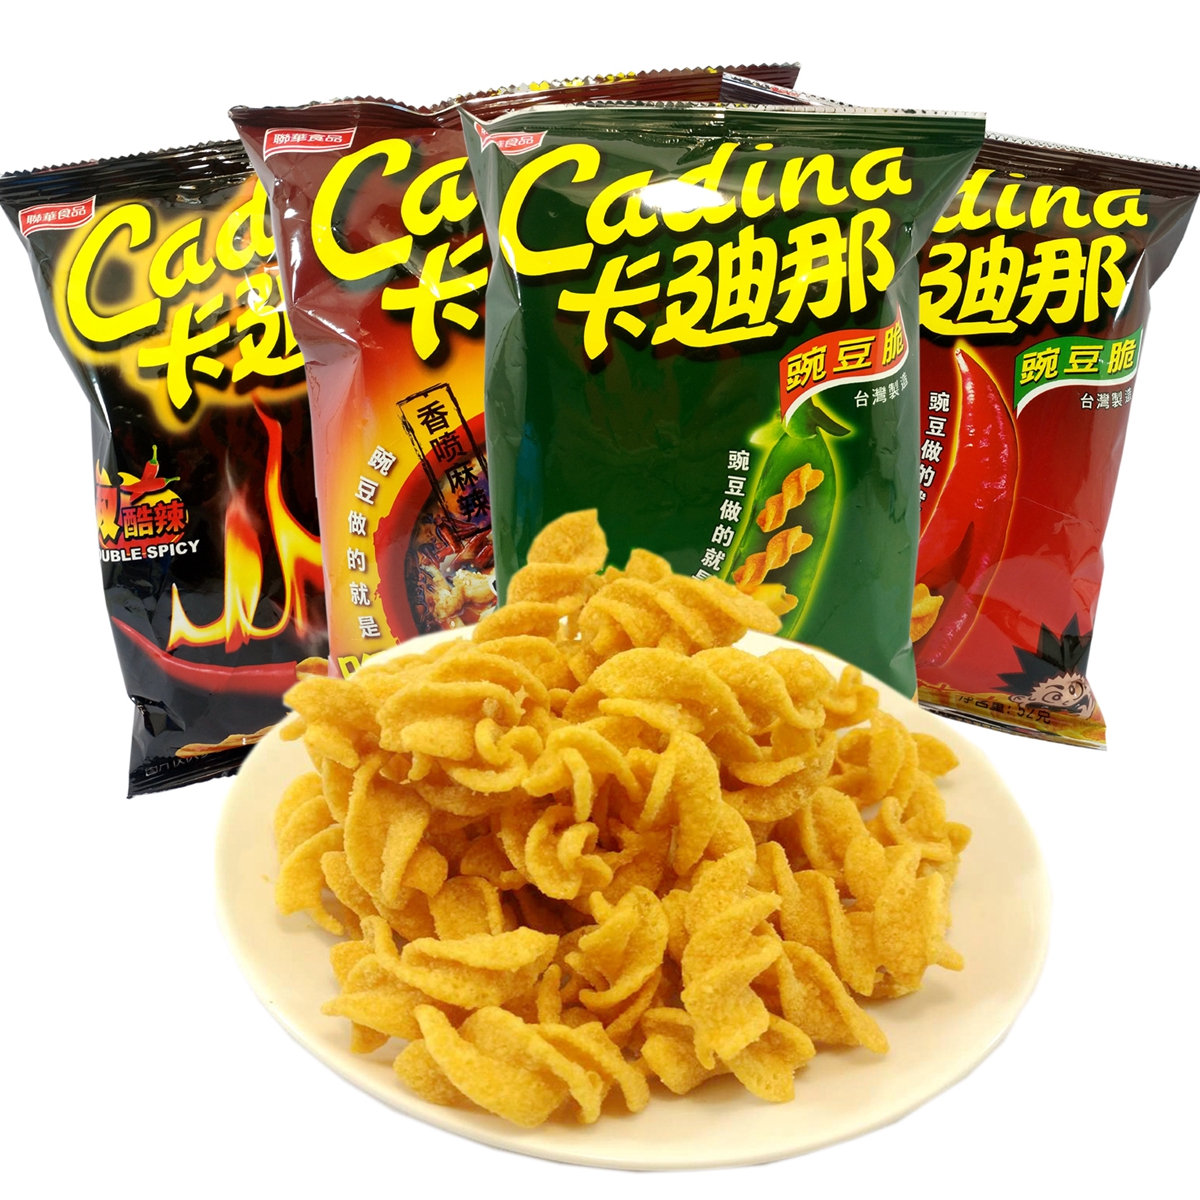 卡迪那豌豆脆膨化食品52g*4袋台湾进口怀旧零食原味等卡迪那薯条